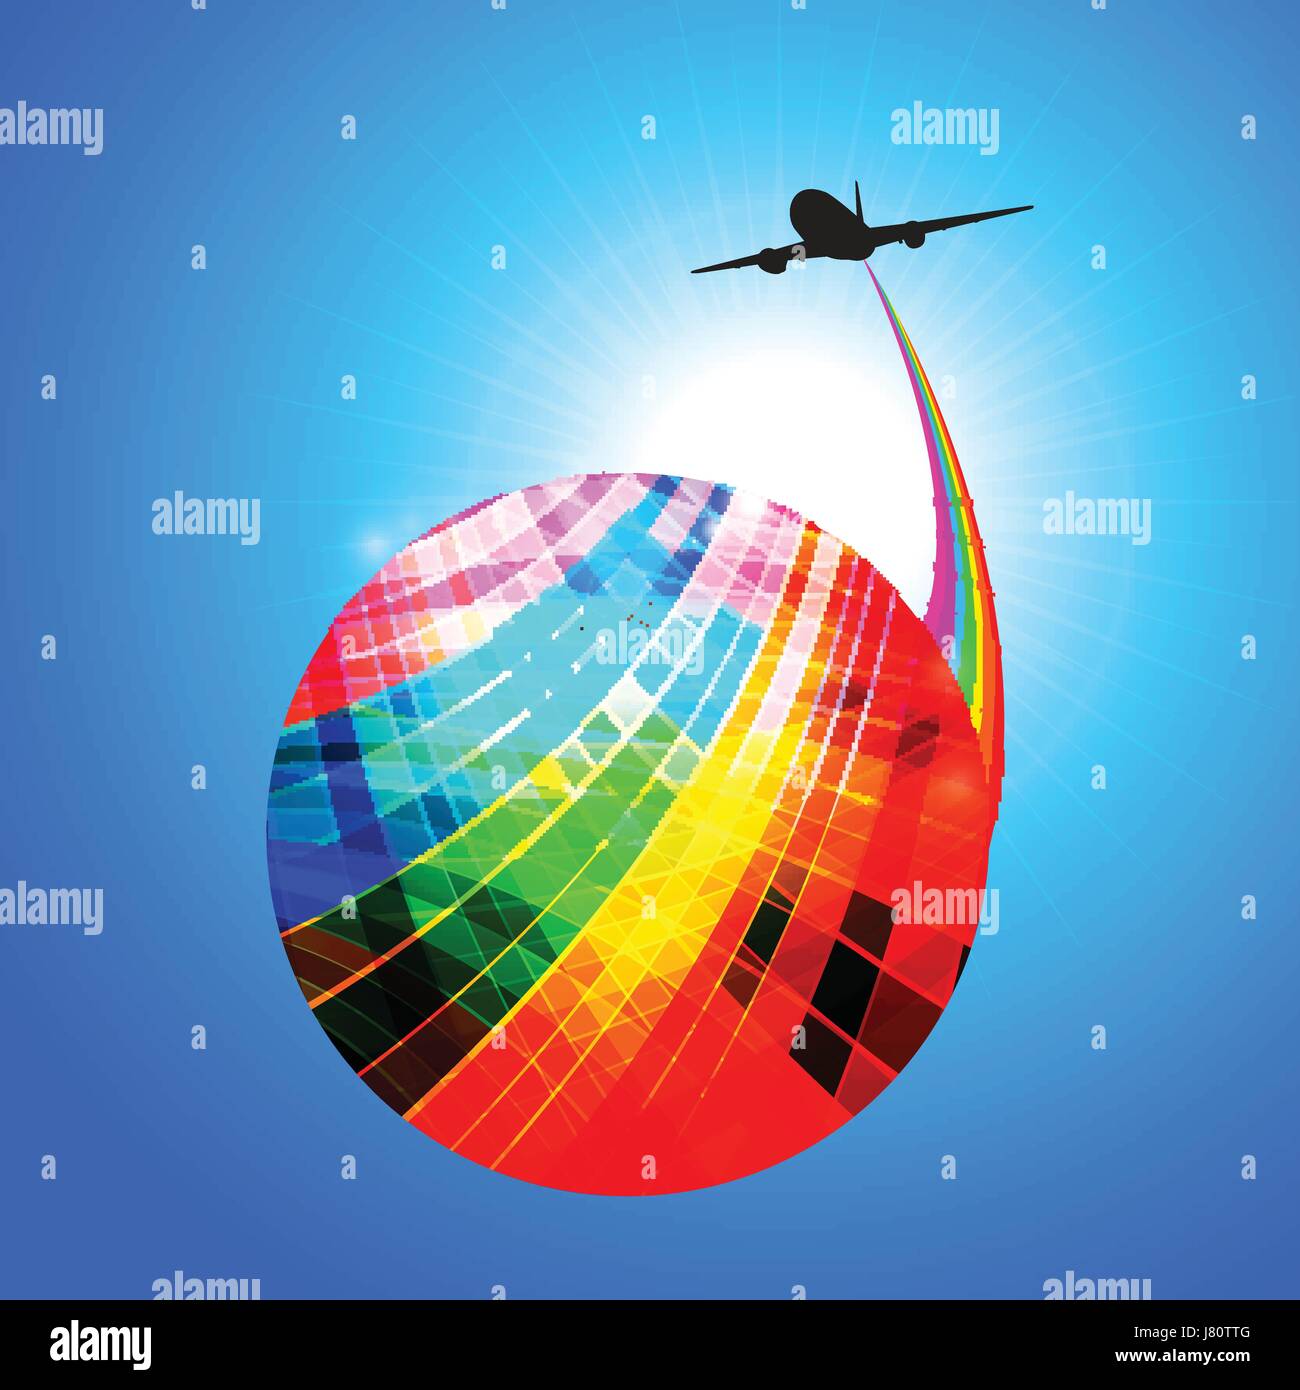 Bunte gestreifte abstrakter Globus mit Regenbogen und Flugzeug Silhouette über sonnigen blauen Himmel Stock Vektor